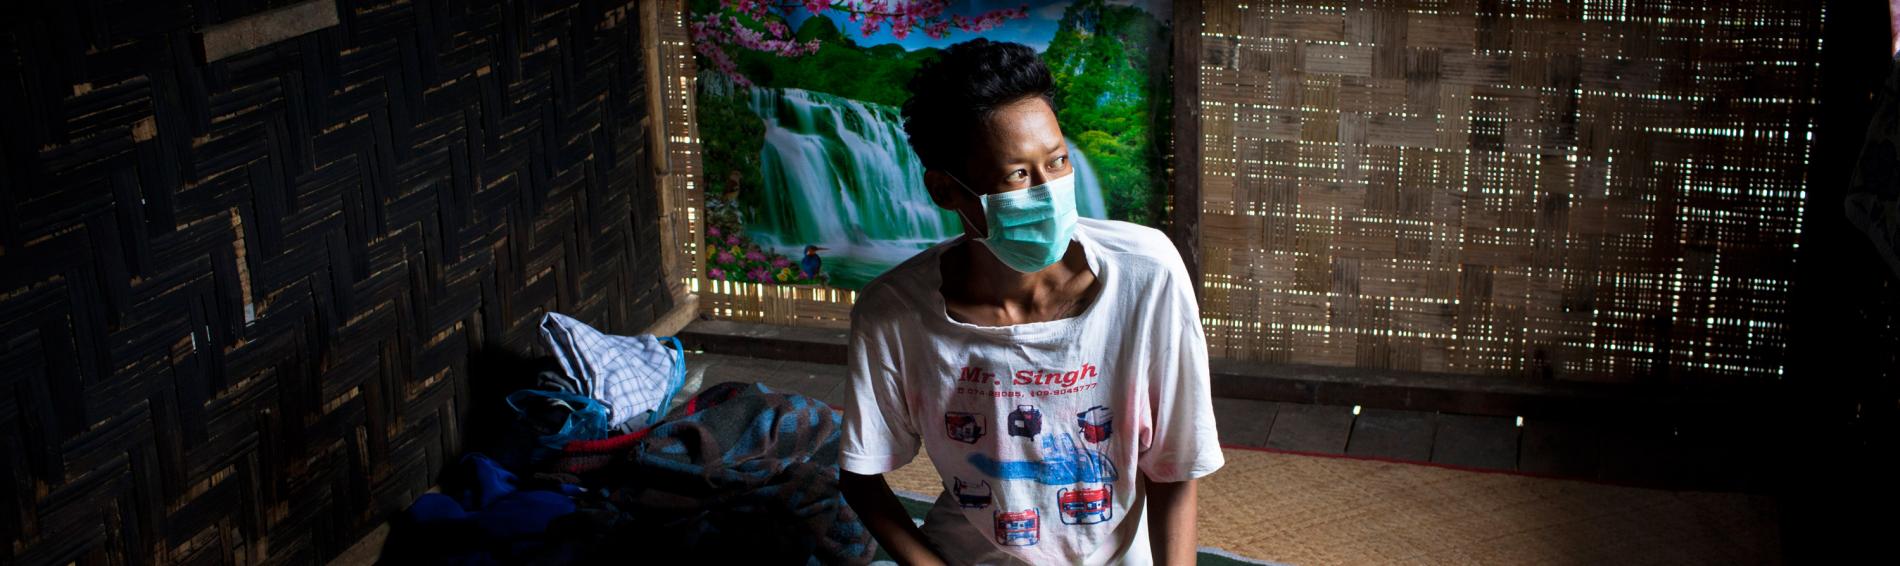 Ein Tuberkulose-Patient. Foto: William Daniels